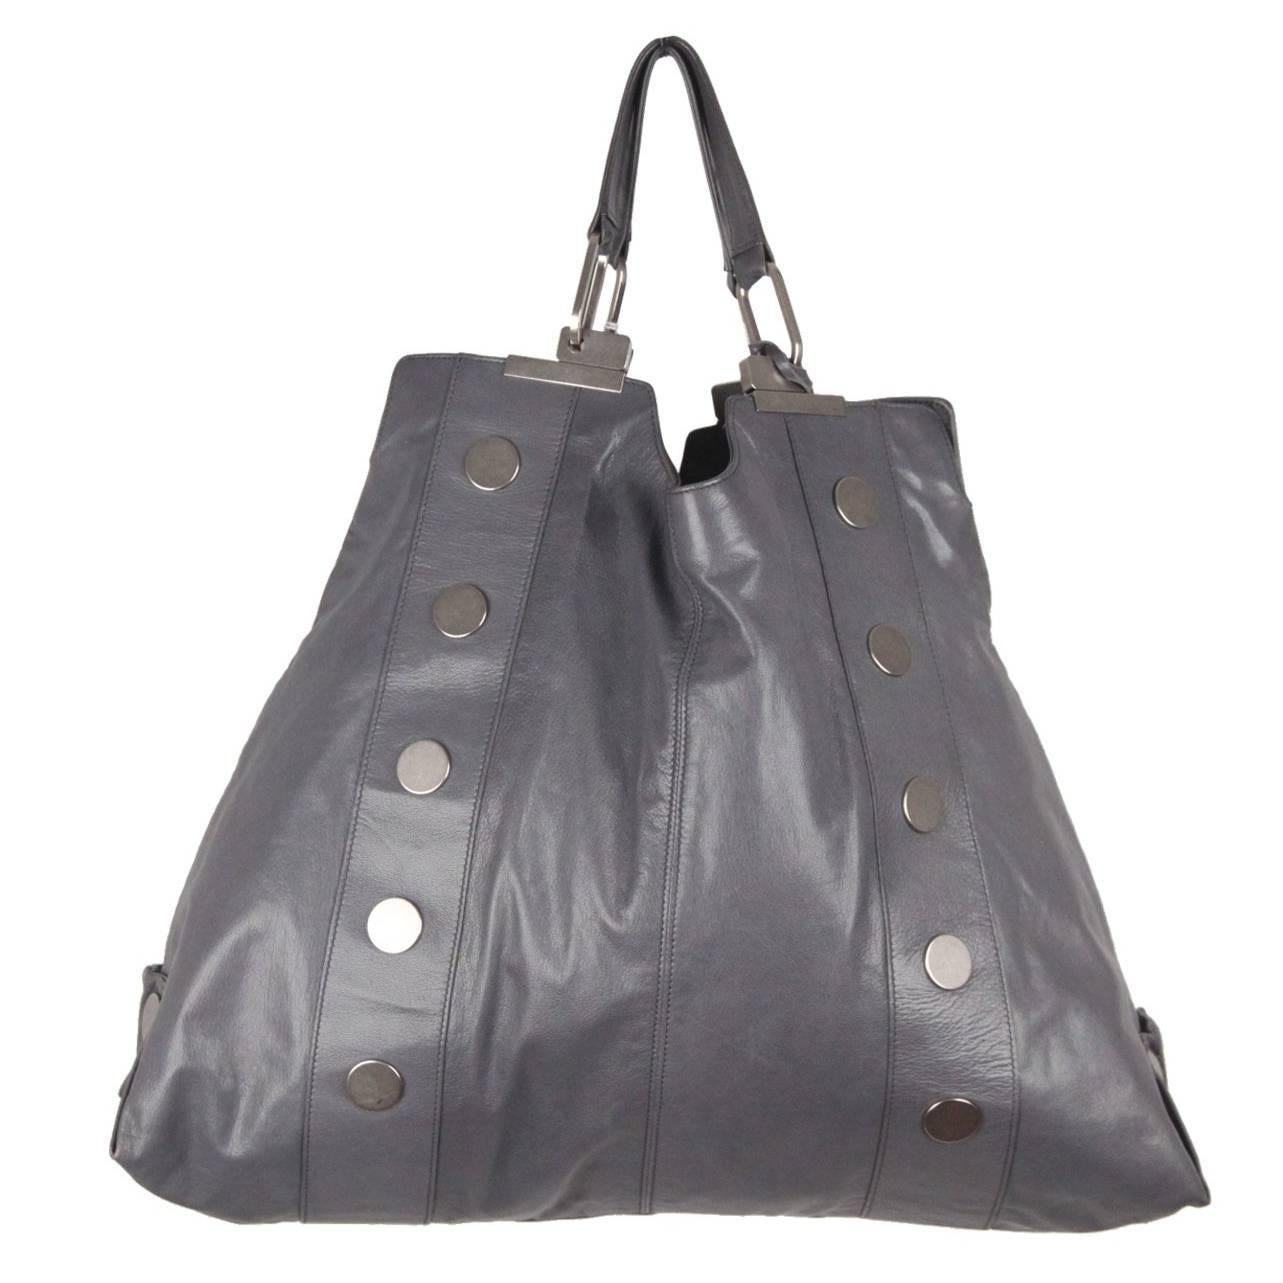 BALENCIAGA Gray Leather LARGE SHOPPING BAG Shopper